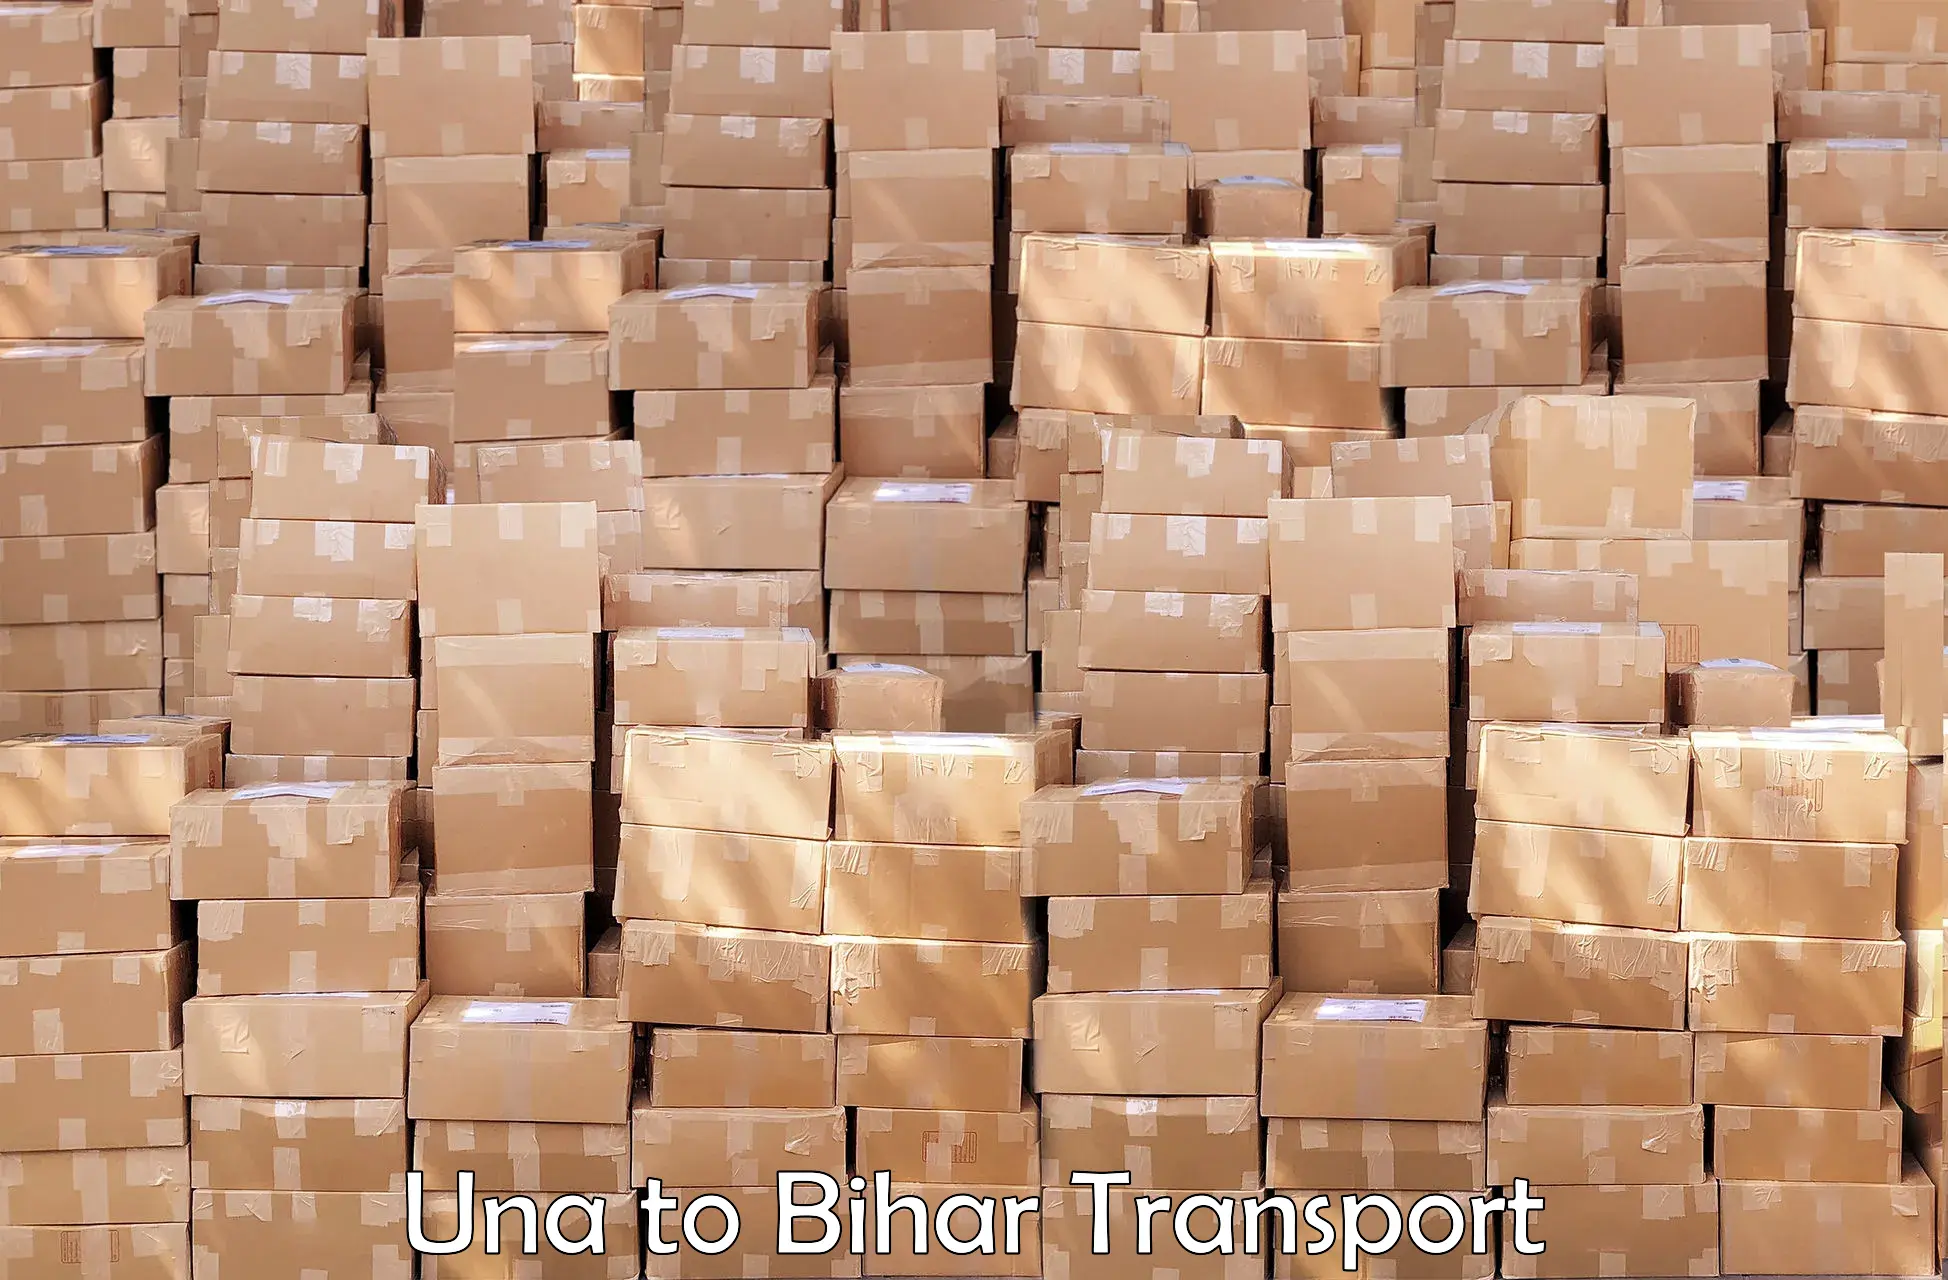 Bike transport service Una to Jhajha